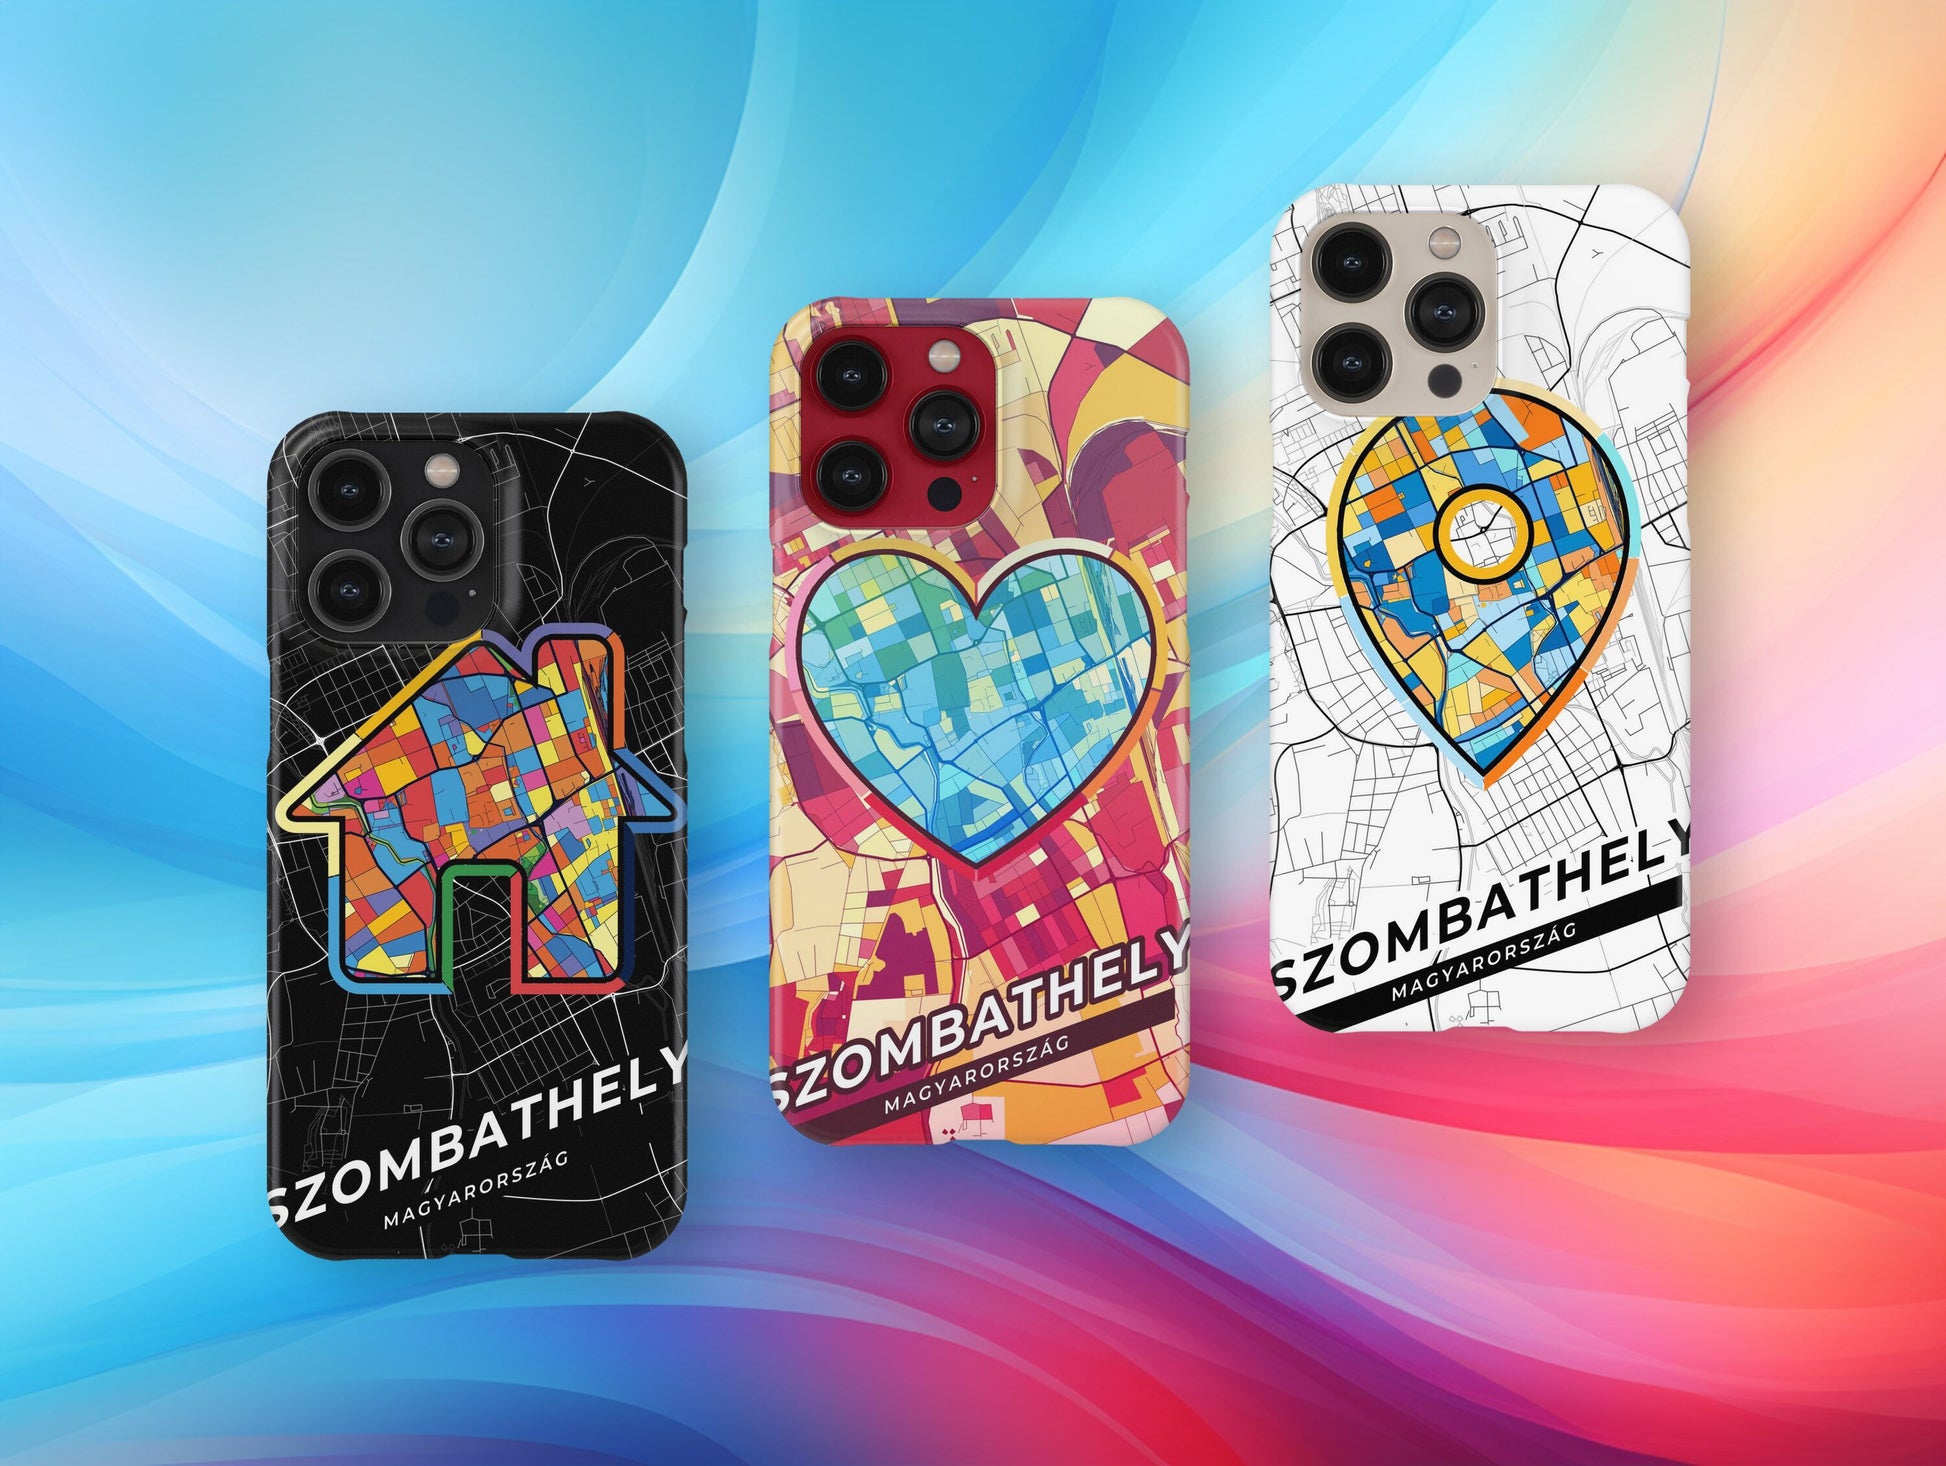 Szombathely Hungary slim phone case with colorful icon